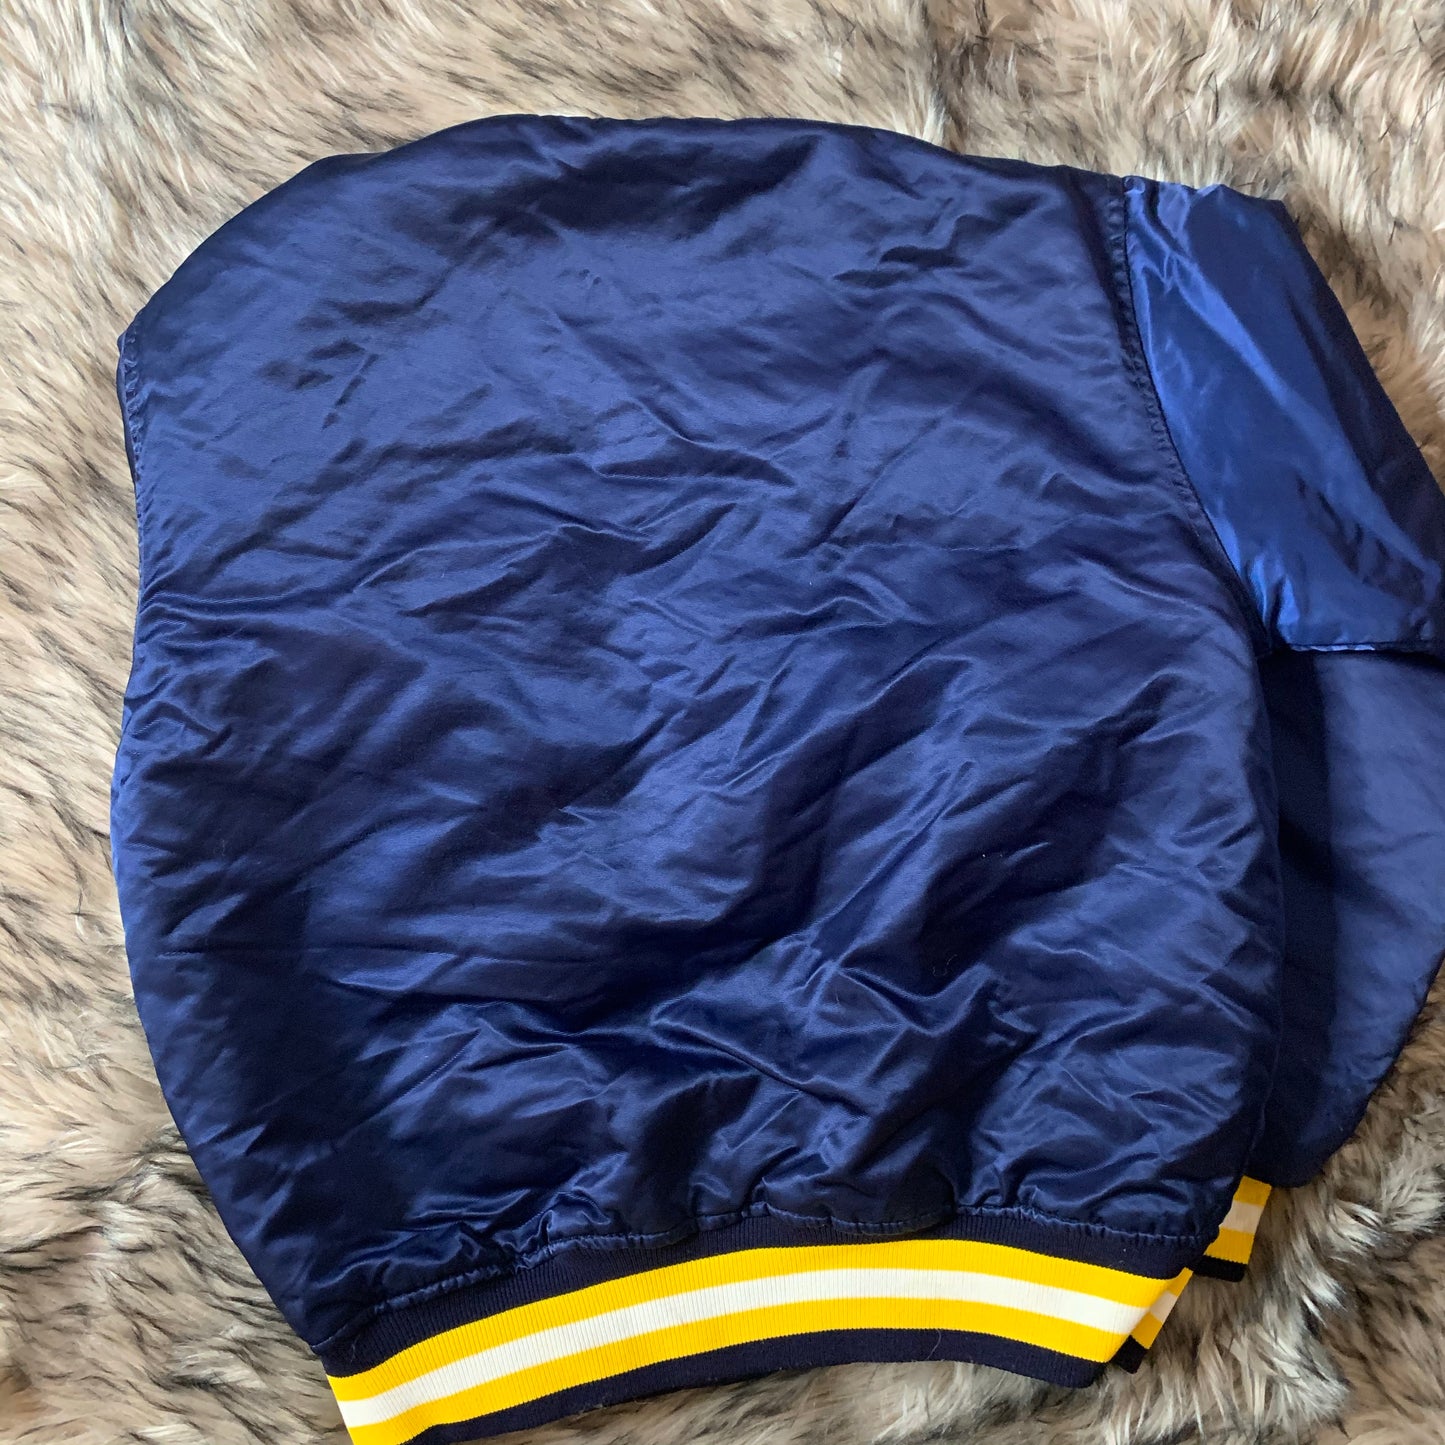 Vintage retro 90s Notre Dame satin starter jacket